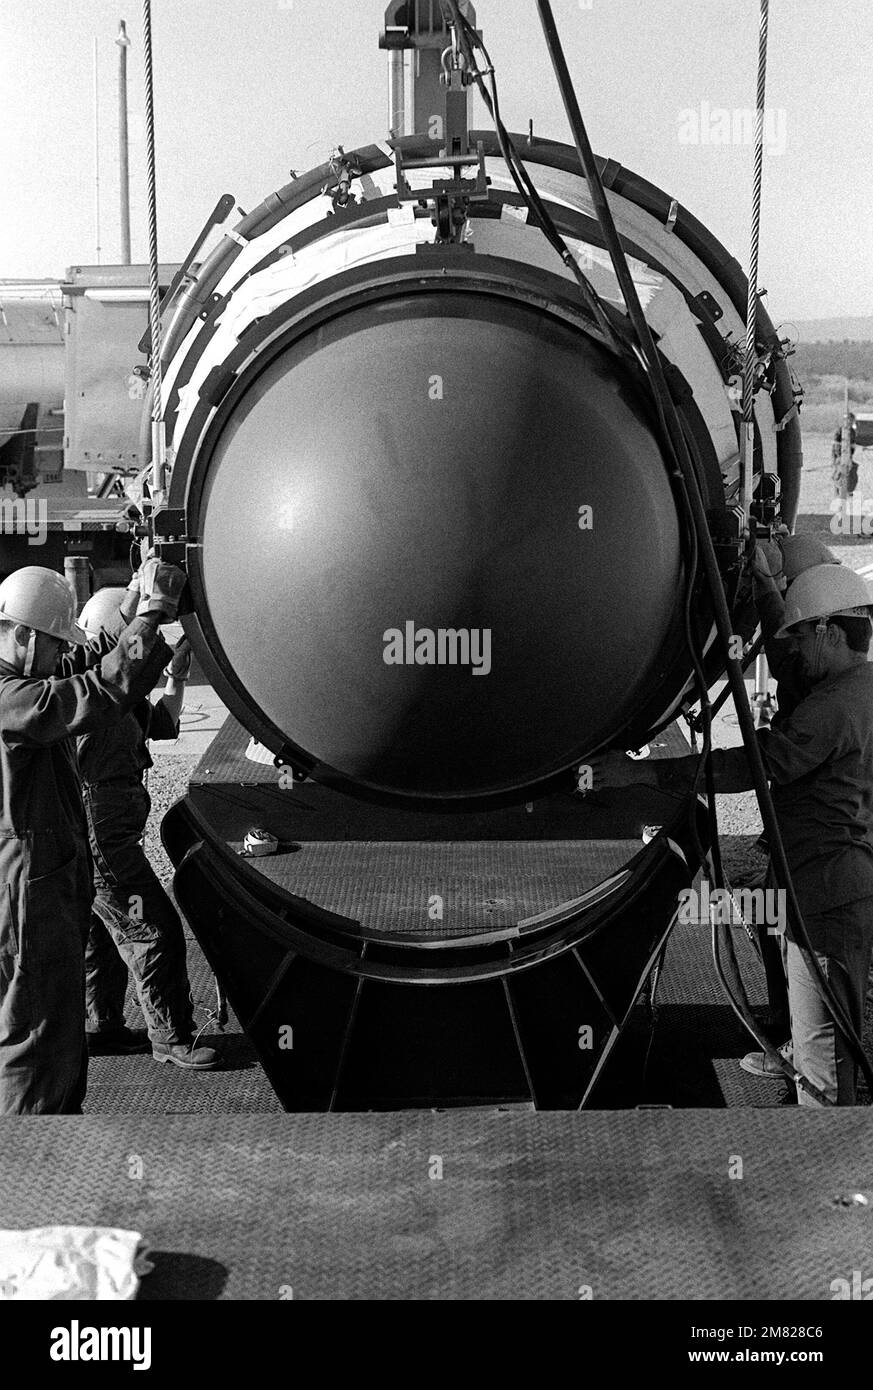 Les membres de l'escadron de maintenance des missiles 390th guident un véhicule de retour Titan II sur une remorque après son retrait d'un silo au site no 570-5. Base: Davis-Monthan Air Force base État: Arizona (AZ) pays: Etats-Unis d'Amérique (USA) Banque D'Images